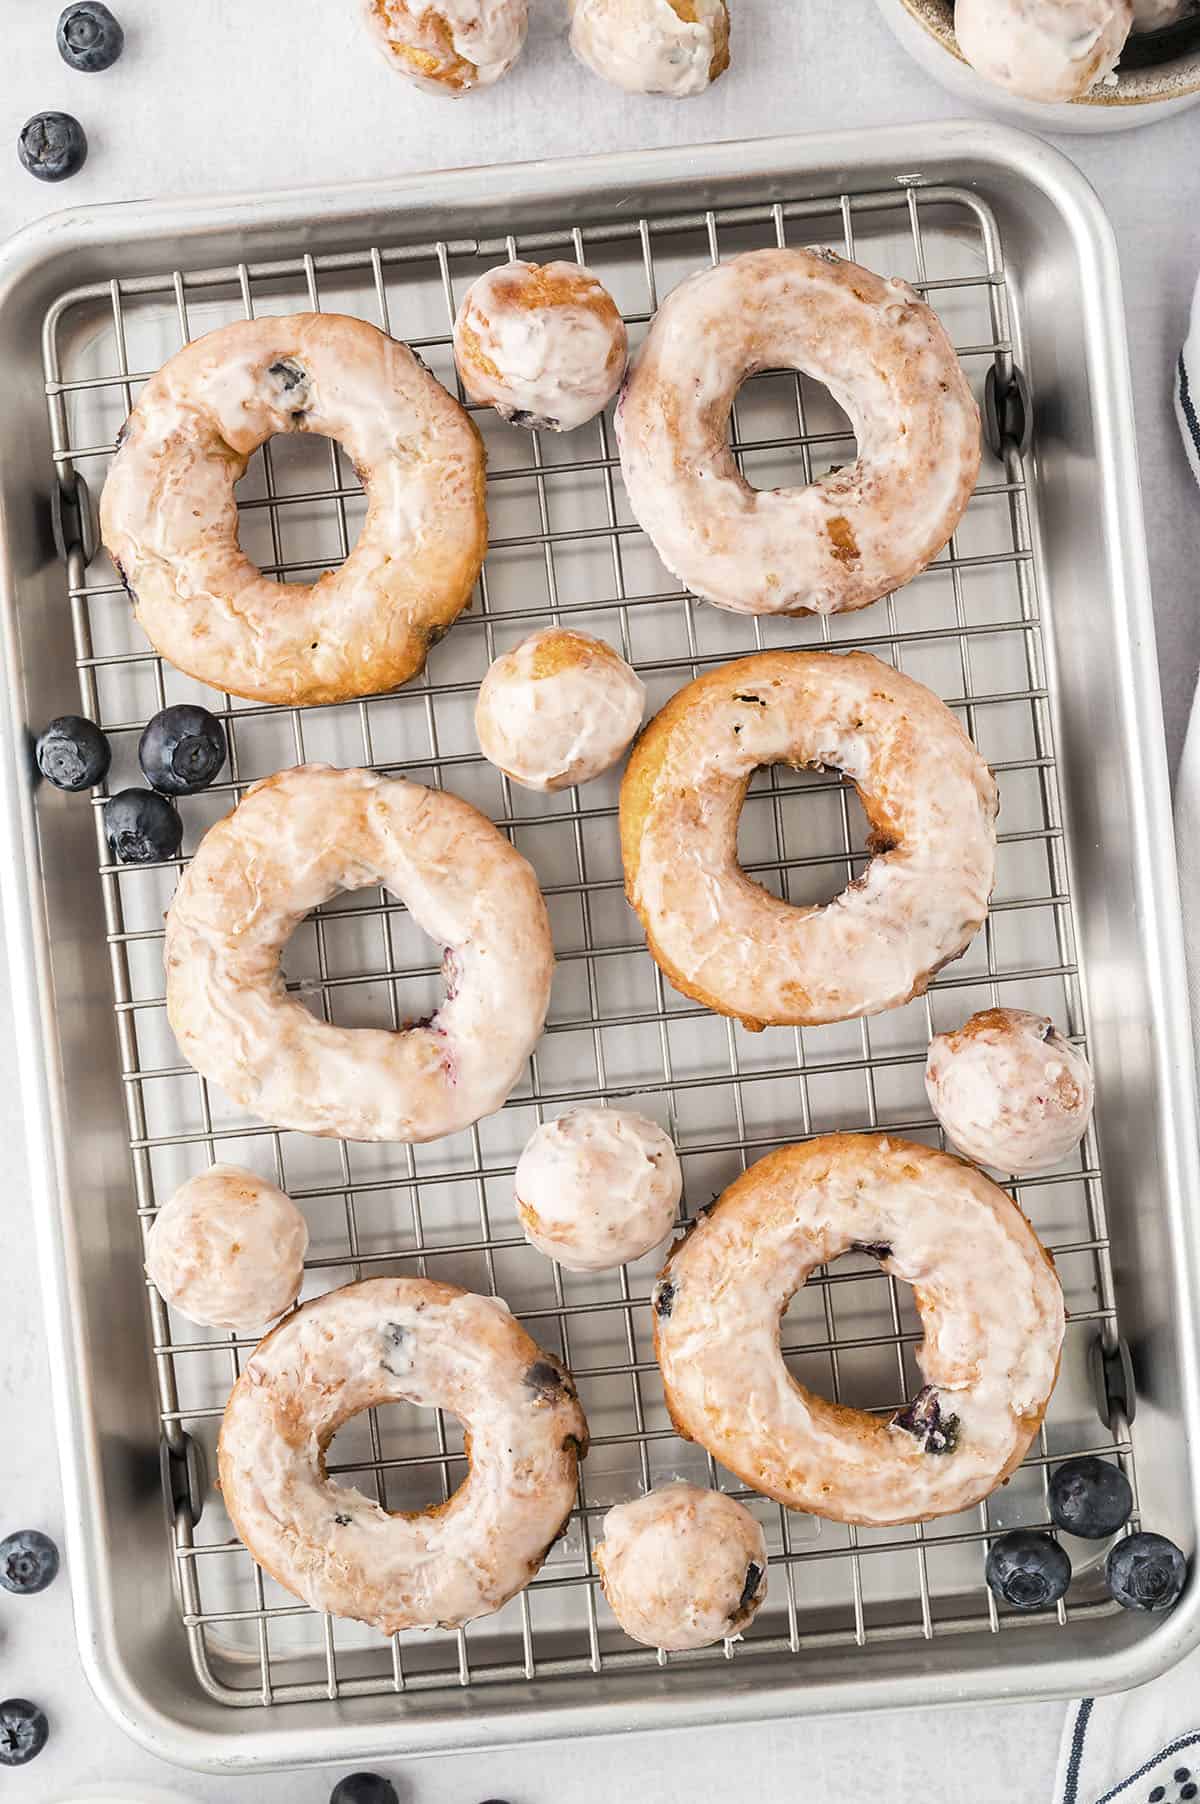 Glazed donuts on wire rack.